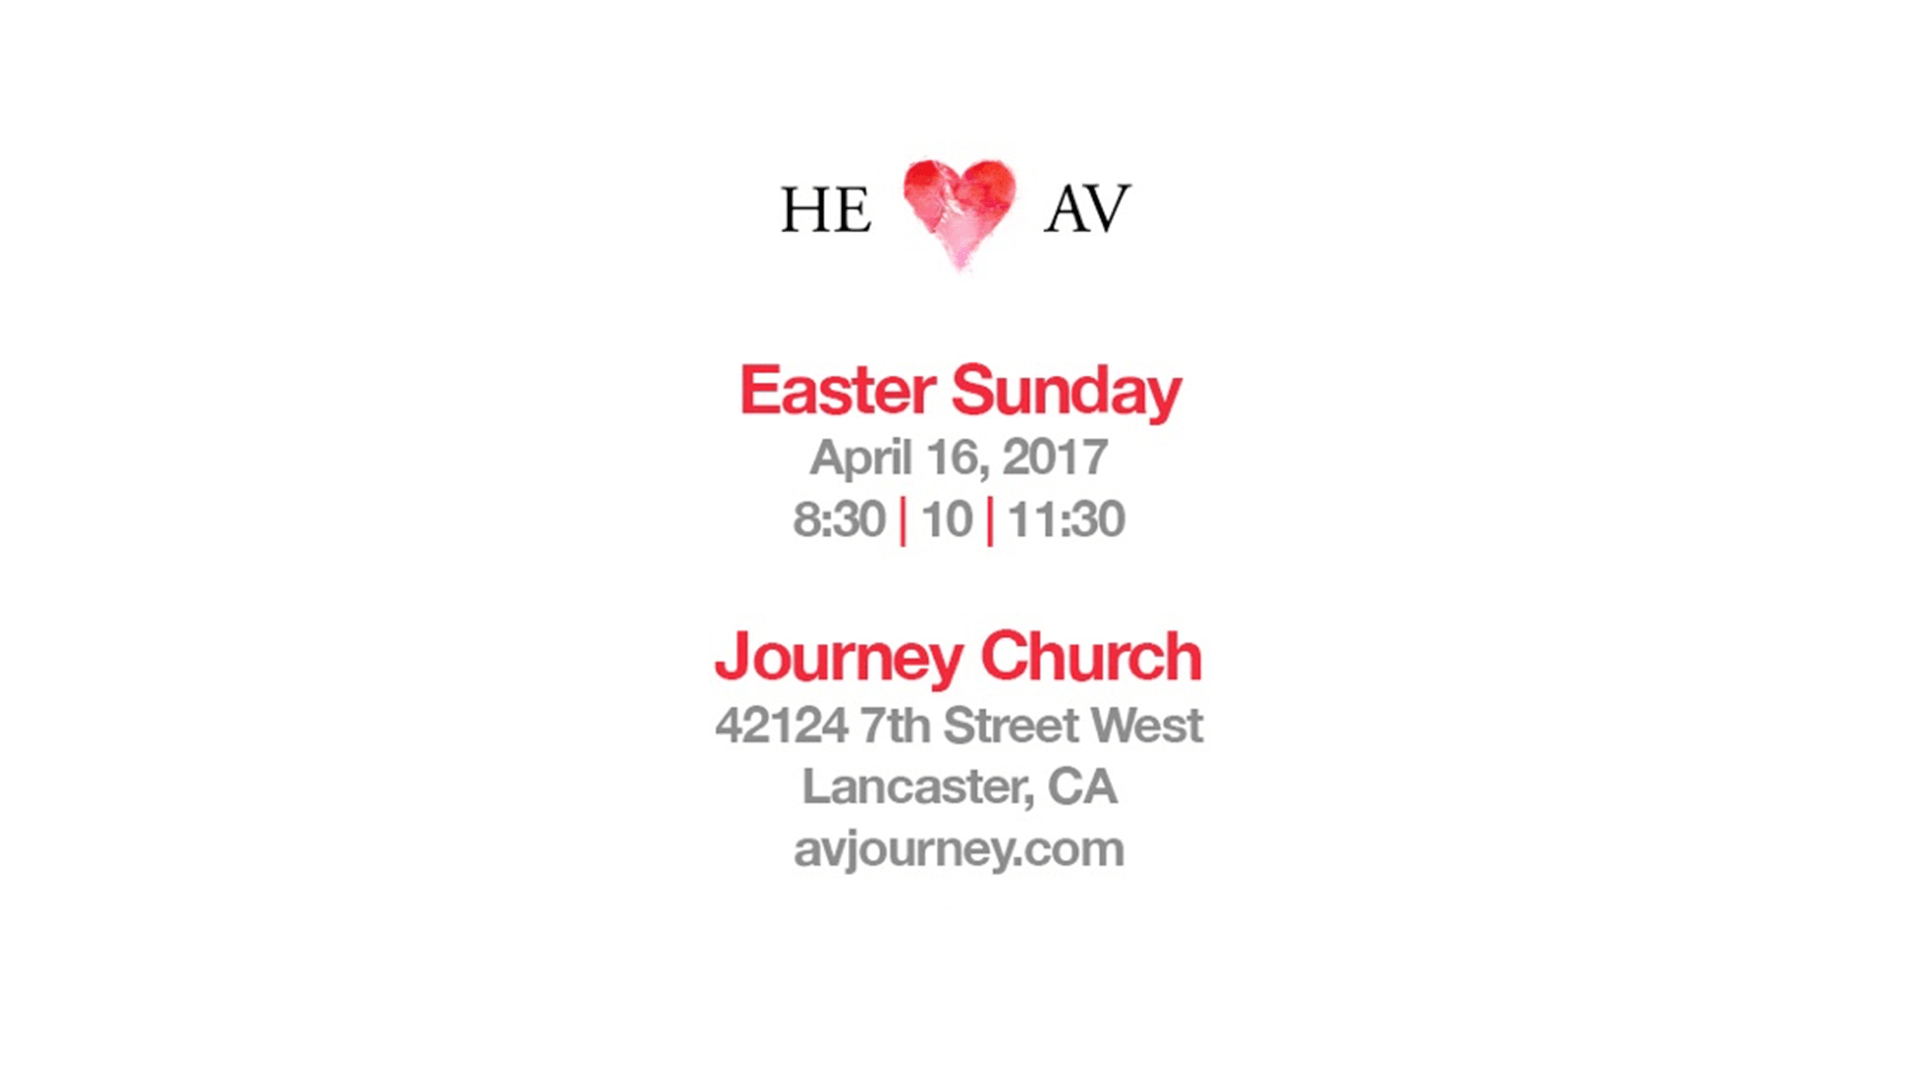 Journey Church: He Hearts AV